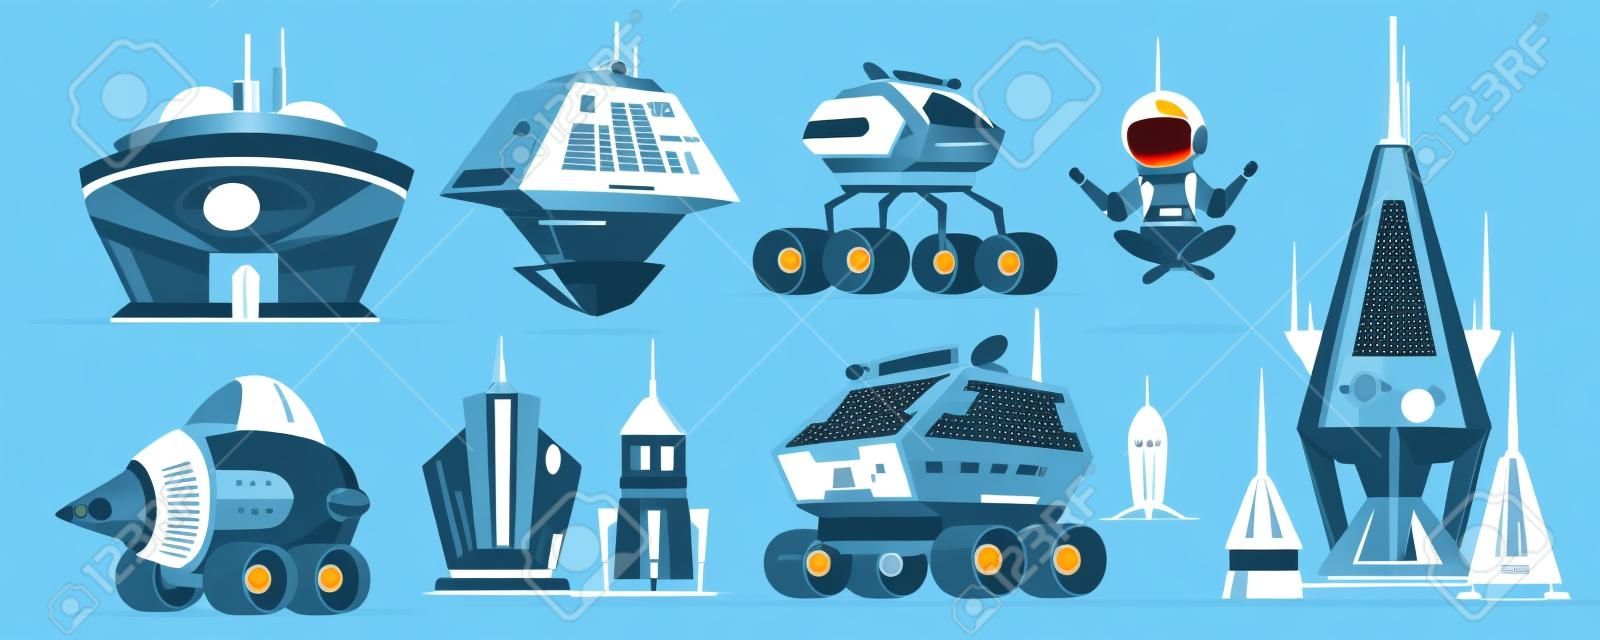 宇宙探査ロケットや車両のセット、SFエイリアン建物漫画ベクトルアイコン。未来的な宇宙船、無重力で飛ぶ宇宙飛行士、火星ローバーイラストコレクション